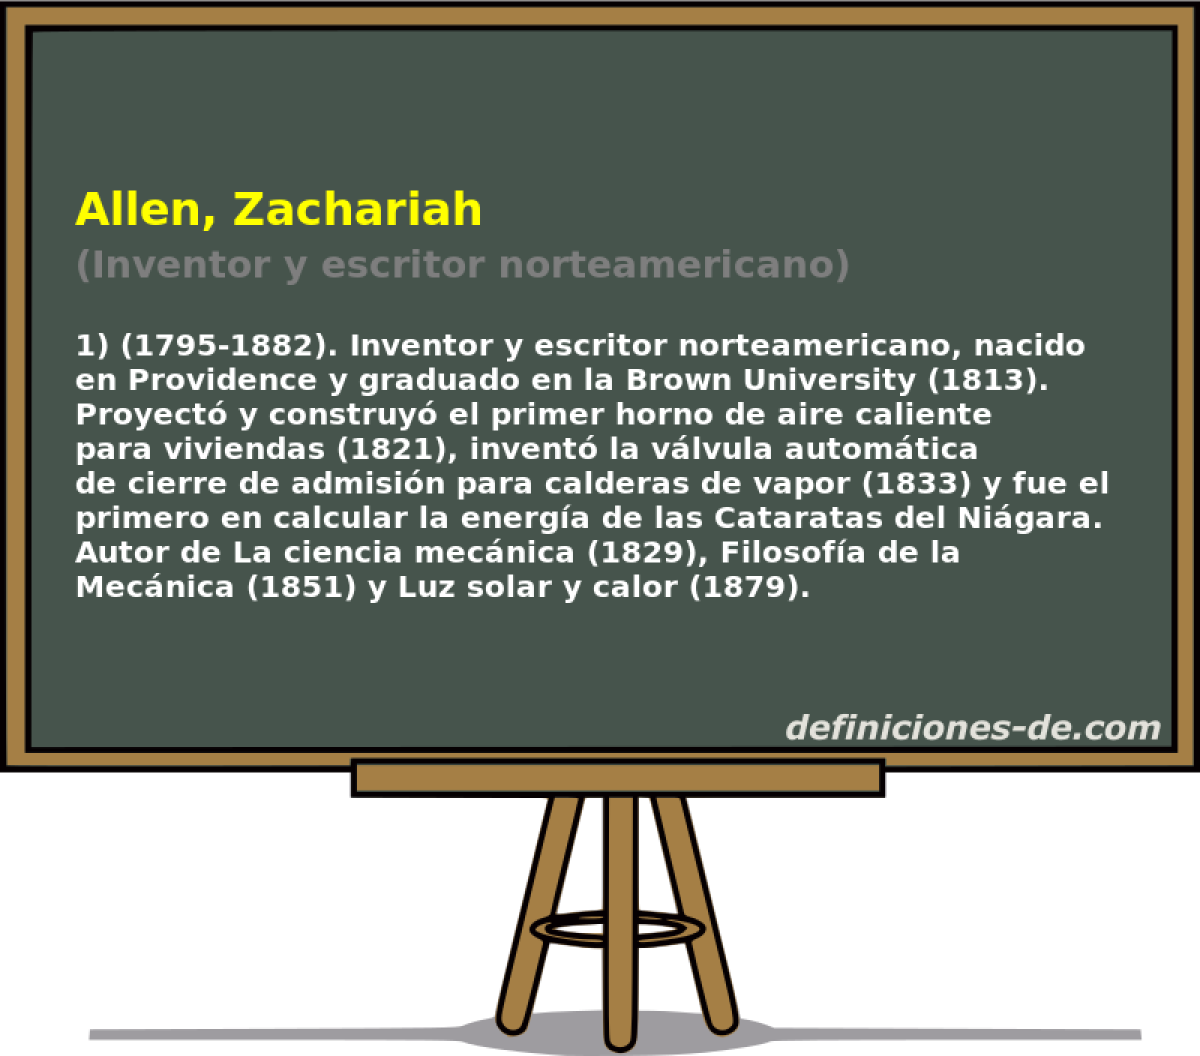 Allen, Zachariah (Inventor y escritor norteamericano)